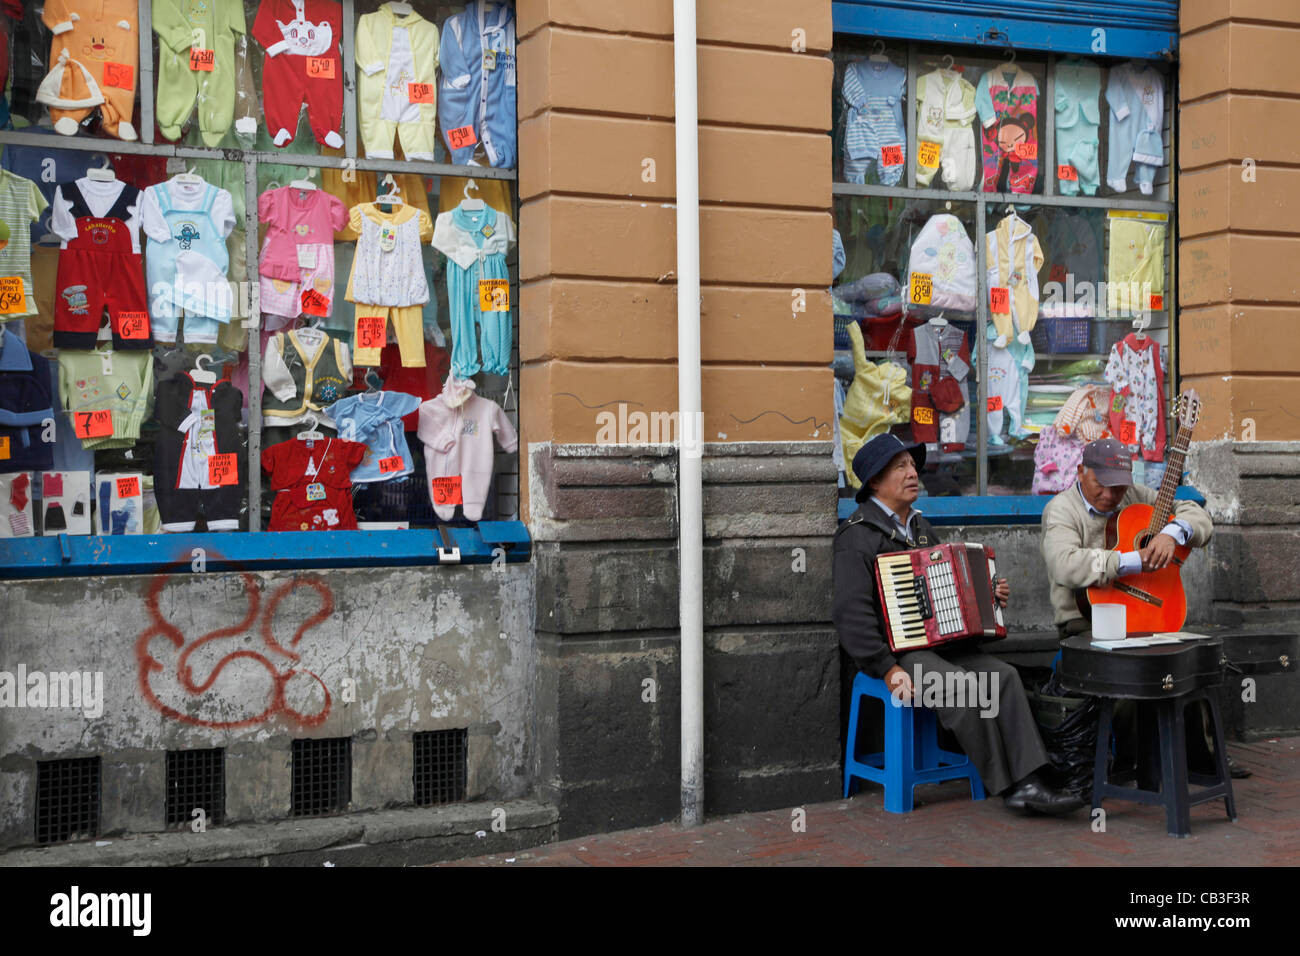 Ecuador. Nativo di uomini Quechua riproduzione di musica per le strade di Quito, con i bambini il negozio di abbigliamento in background Foto Stock